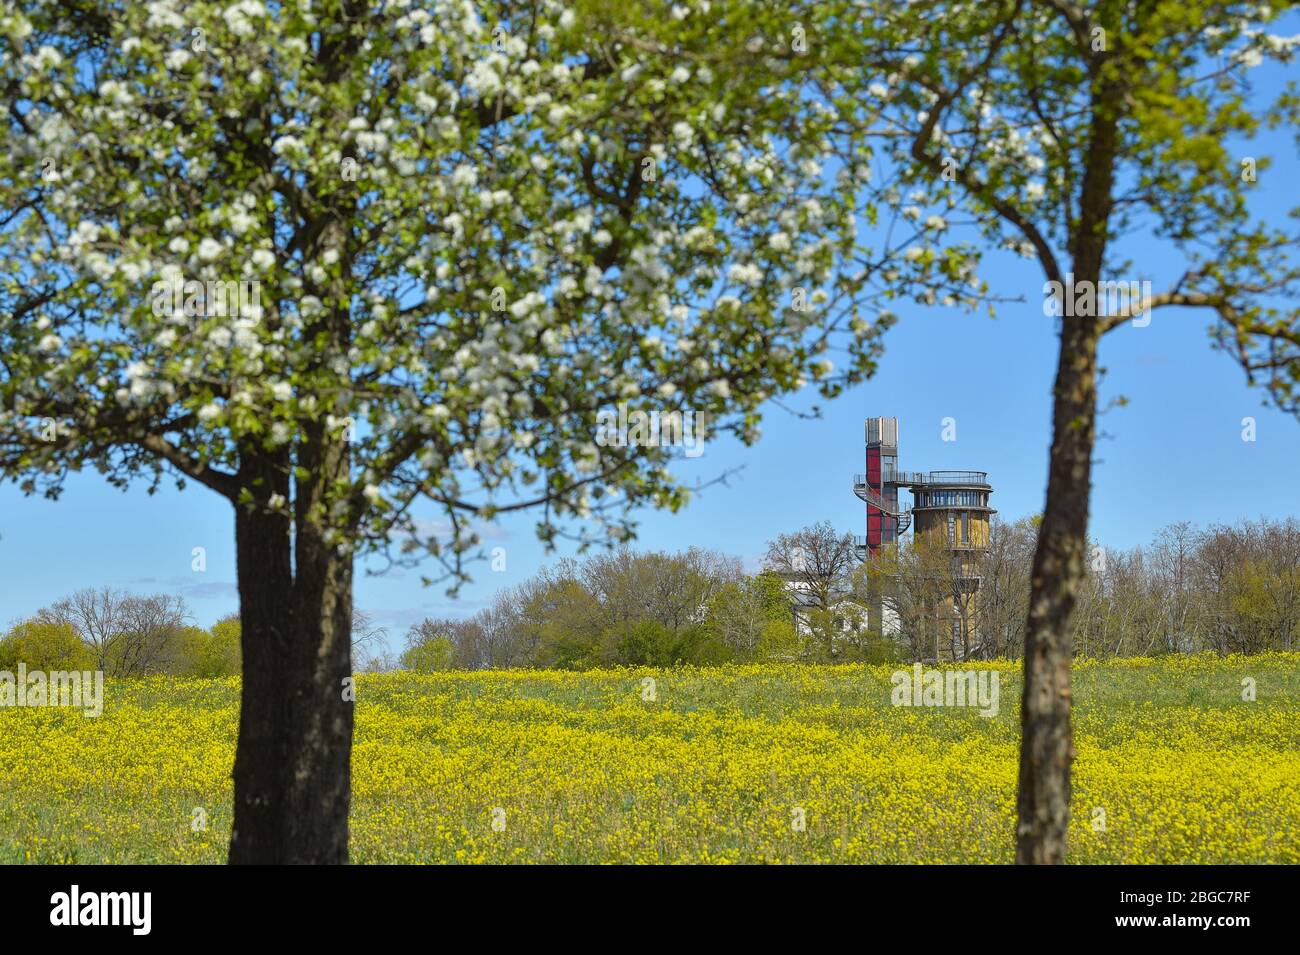 20 avril 2020, Brandenburg, Joachimsthal: Derrière un pré à fleurs jaunes se trouve la tour d'eau avec une plate-forme d'observation et un ascenseur du projet Biorama. En arrière-plan, vous pouvez voir le Grimnitzsee. Le projet Biorama est une initiative privée de Sarah Phillips et Richard Hurding. Il est destiné à servir de point d'accès central à la réserve de biosphère de l'UNESCO, Schorfheide-Chorin. Dans le projet Biorama, les visiteurs font l'expérience d'une façon innovante de combiner les loisirs, la culture, la science et les affaires et de les promouvoir avec des avantages écologiques. La tour d'eau est fermée pour les visiteurs en hiver photo: Patr Banque D'Images